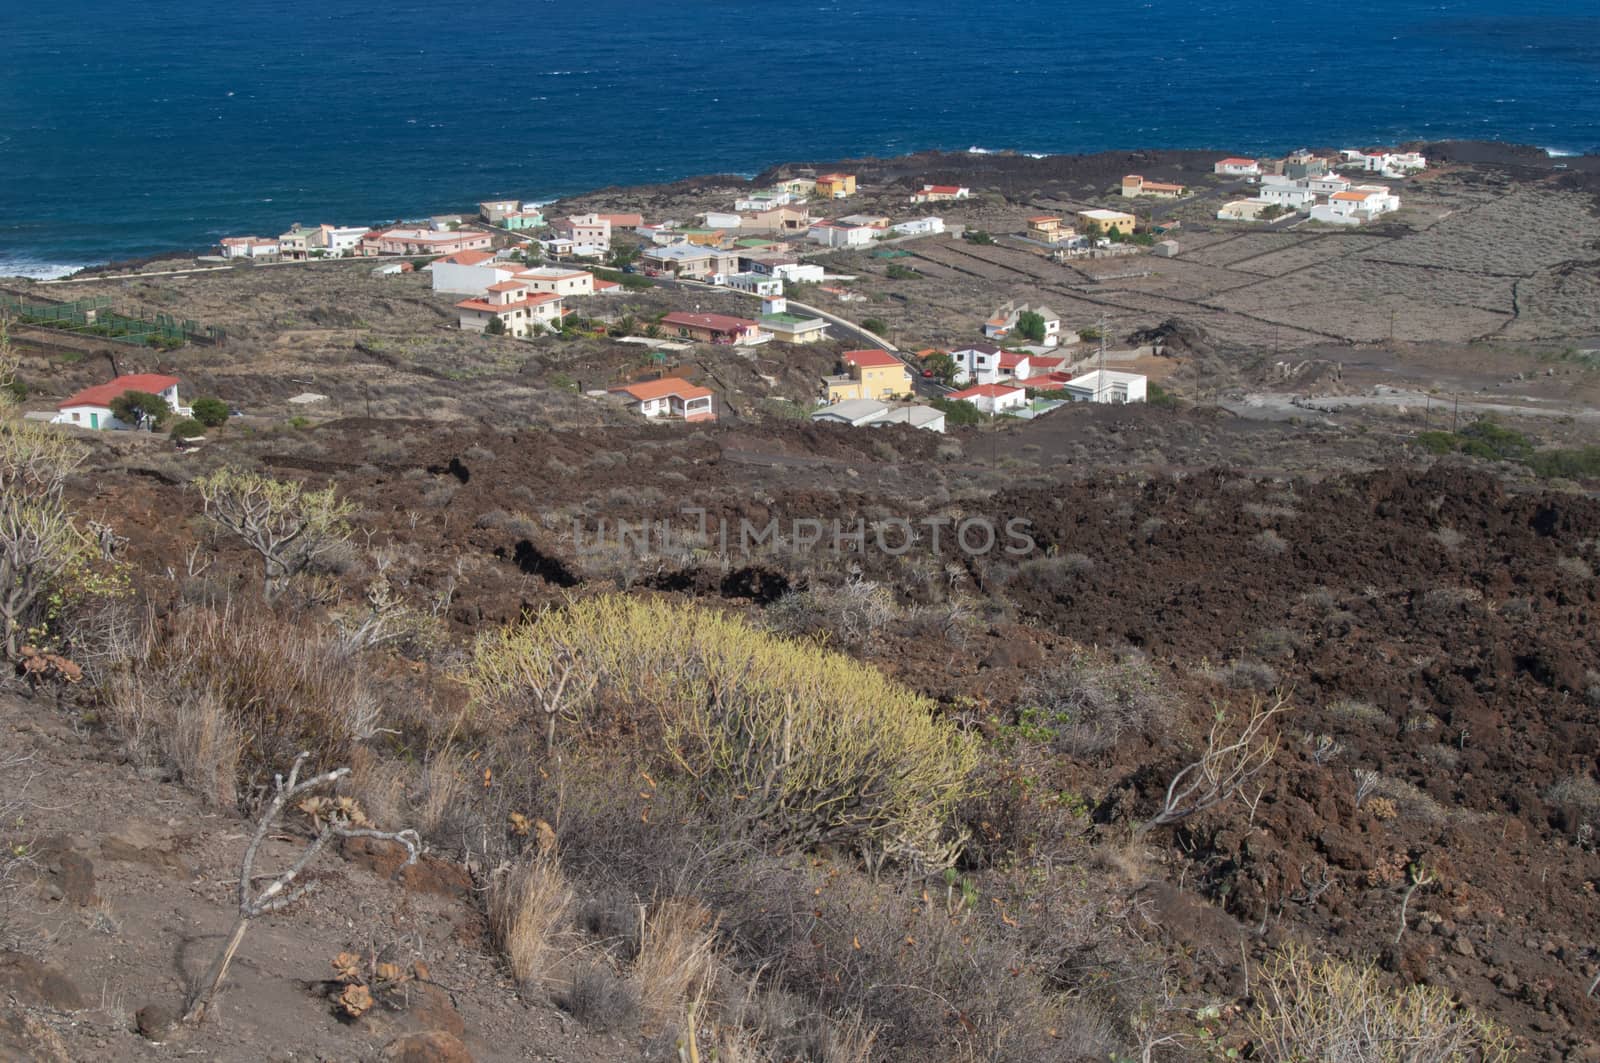 Village of Timijiraque. Valverde. El Hierro. Canary Islands. Spain.